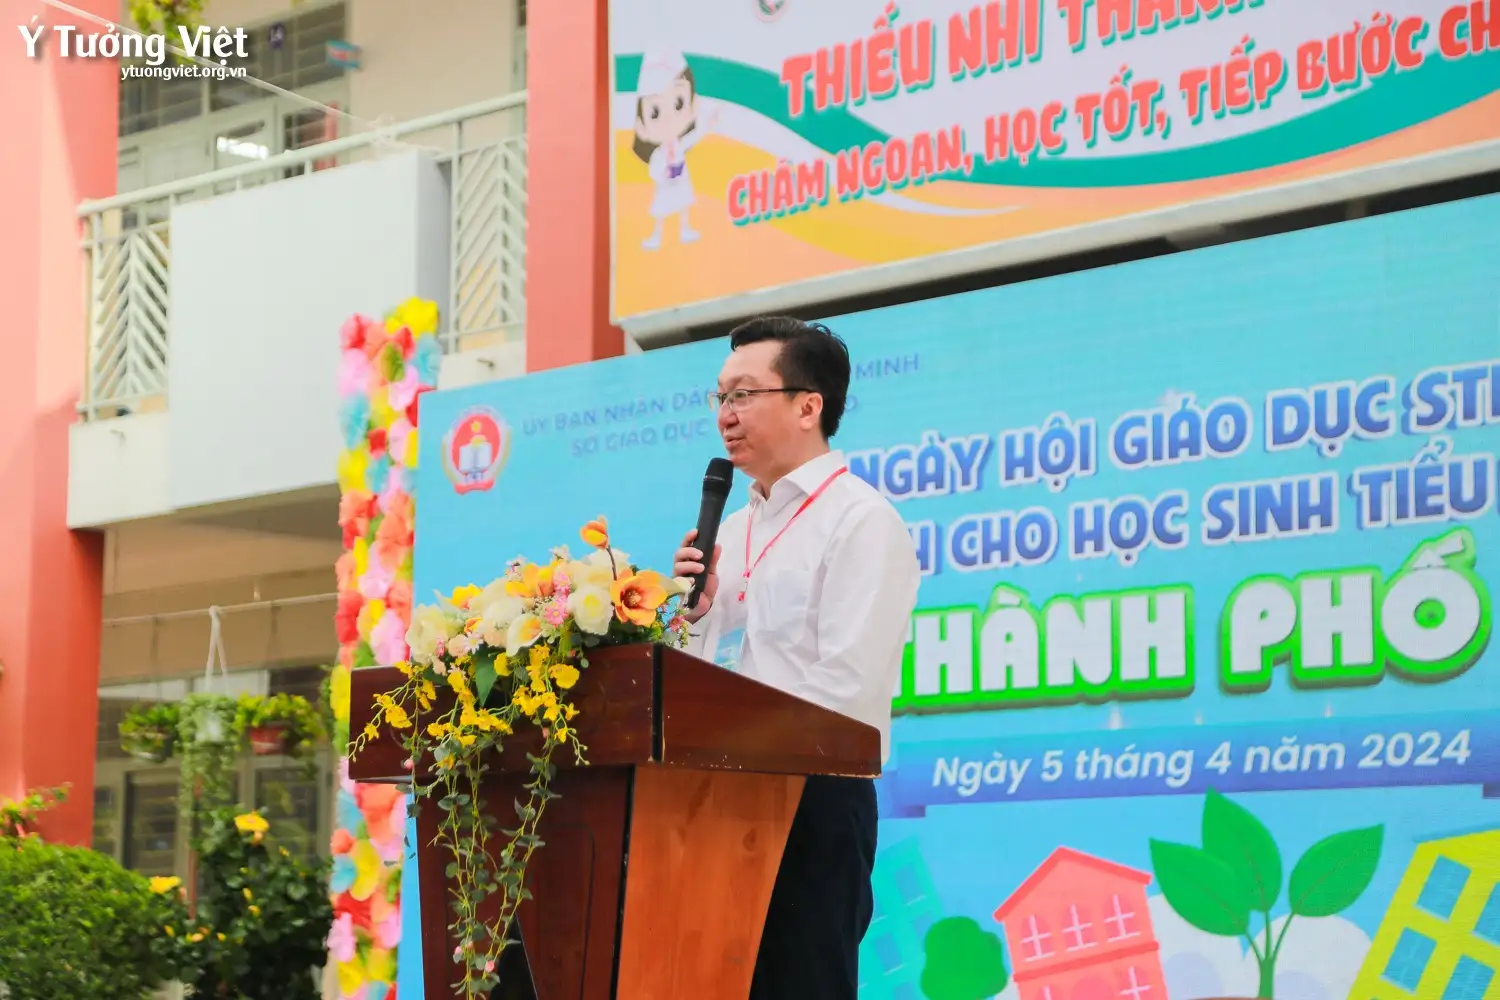 Ngày hội Giáo dục STEM Tp. Hồ Chí Minh – Gieo hạt sáng tạo STEM, ươm mầm xanh Trái Đất